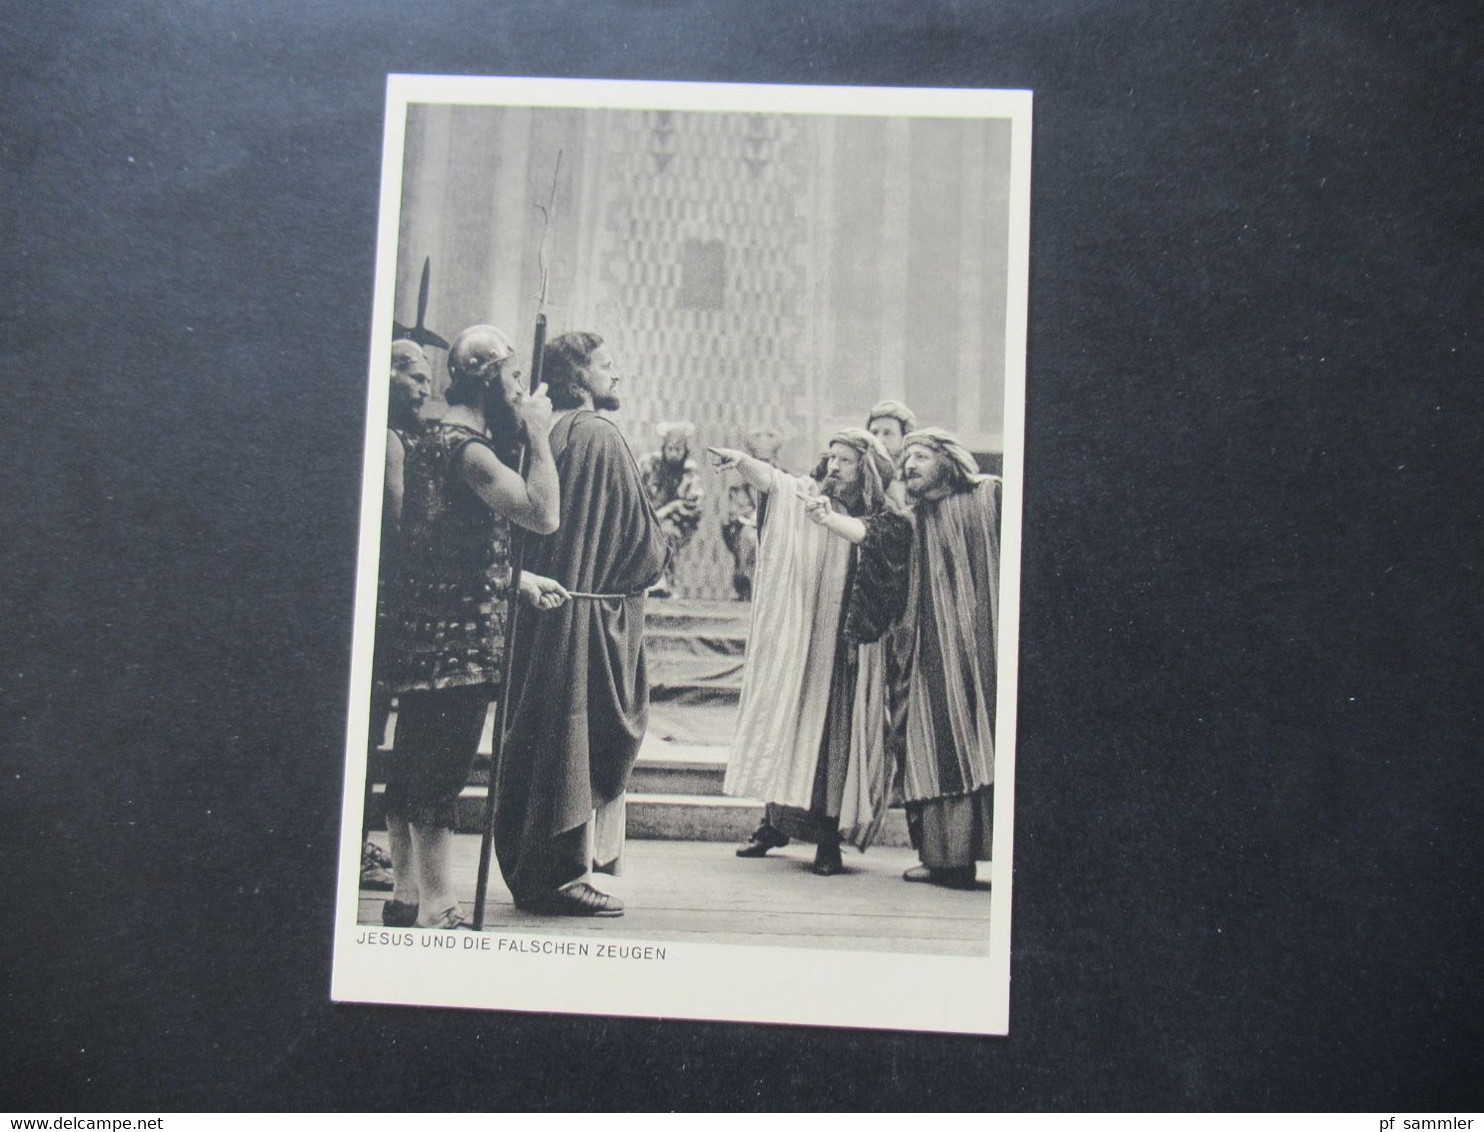 12 offizielle Postkarten Passionsspiele Oberammergau 1950 / offizielle Aufnahmen im original Schuber!